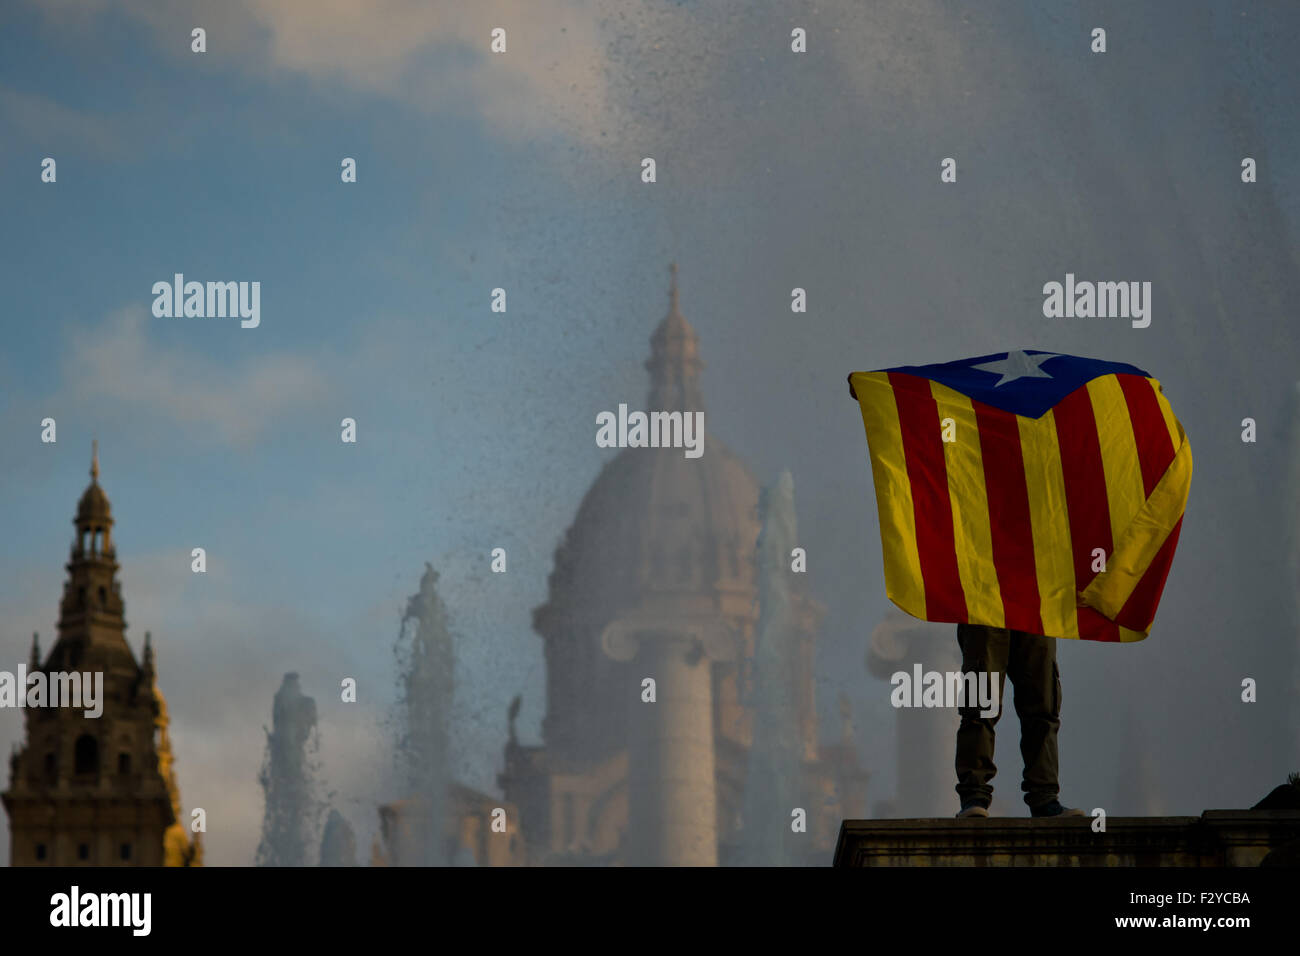 Barcelone, Catalogne, Espagne. 25 Septembre, 2015. Un garçon est titulaire d'un estelada drapeau indépendantiste catalan () au cours de la dernière campagne de rallye 'Junts pel Si' (ensemble pour Oui) à Barcelone le 25 septembre, 2015. Dimanche prochain auront lieu des élections régionales en Catalogne. Les sondages indiquent que l'indépendance parties pourraient obtenir la majorité absolue. Crédit : Jordi Boixareu/ZUMA/Alamy Fil Live News Banque D'Images